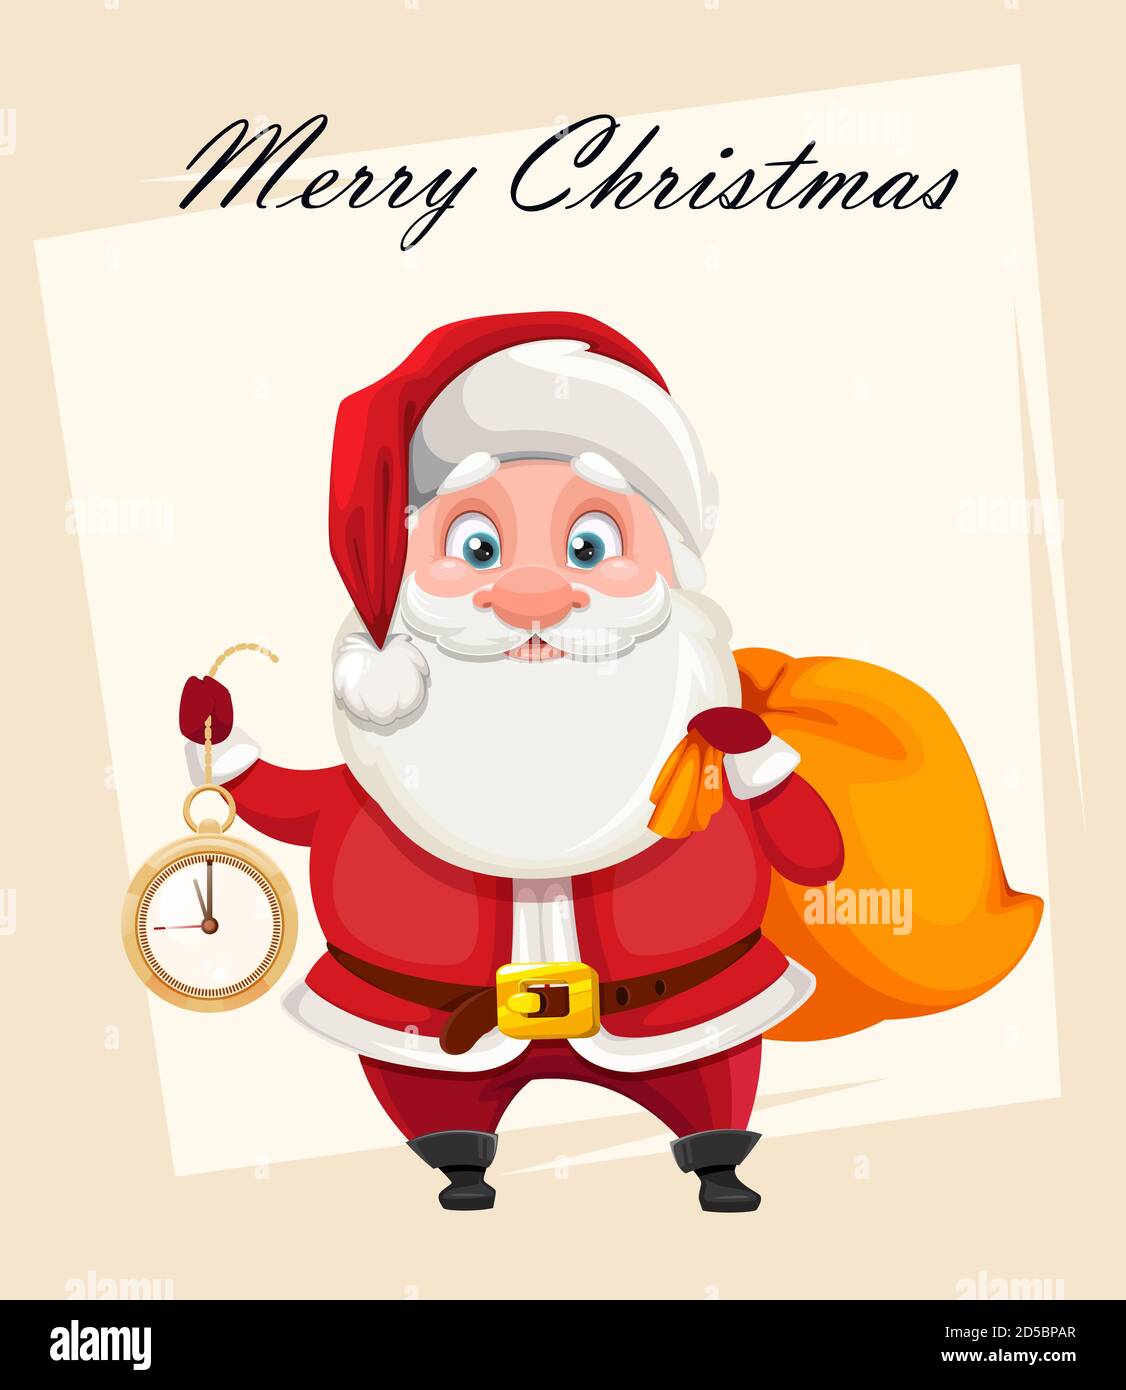 Frohe Weihnachten und ein glückliches neues Jahr Grußkarte. Fröhlicher Weihnachtsmann mit Uhr und Sack mit Geschenken. Vektorgrafik Stock Vektor